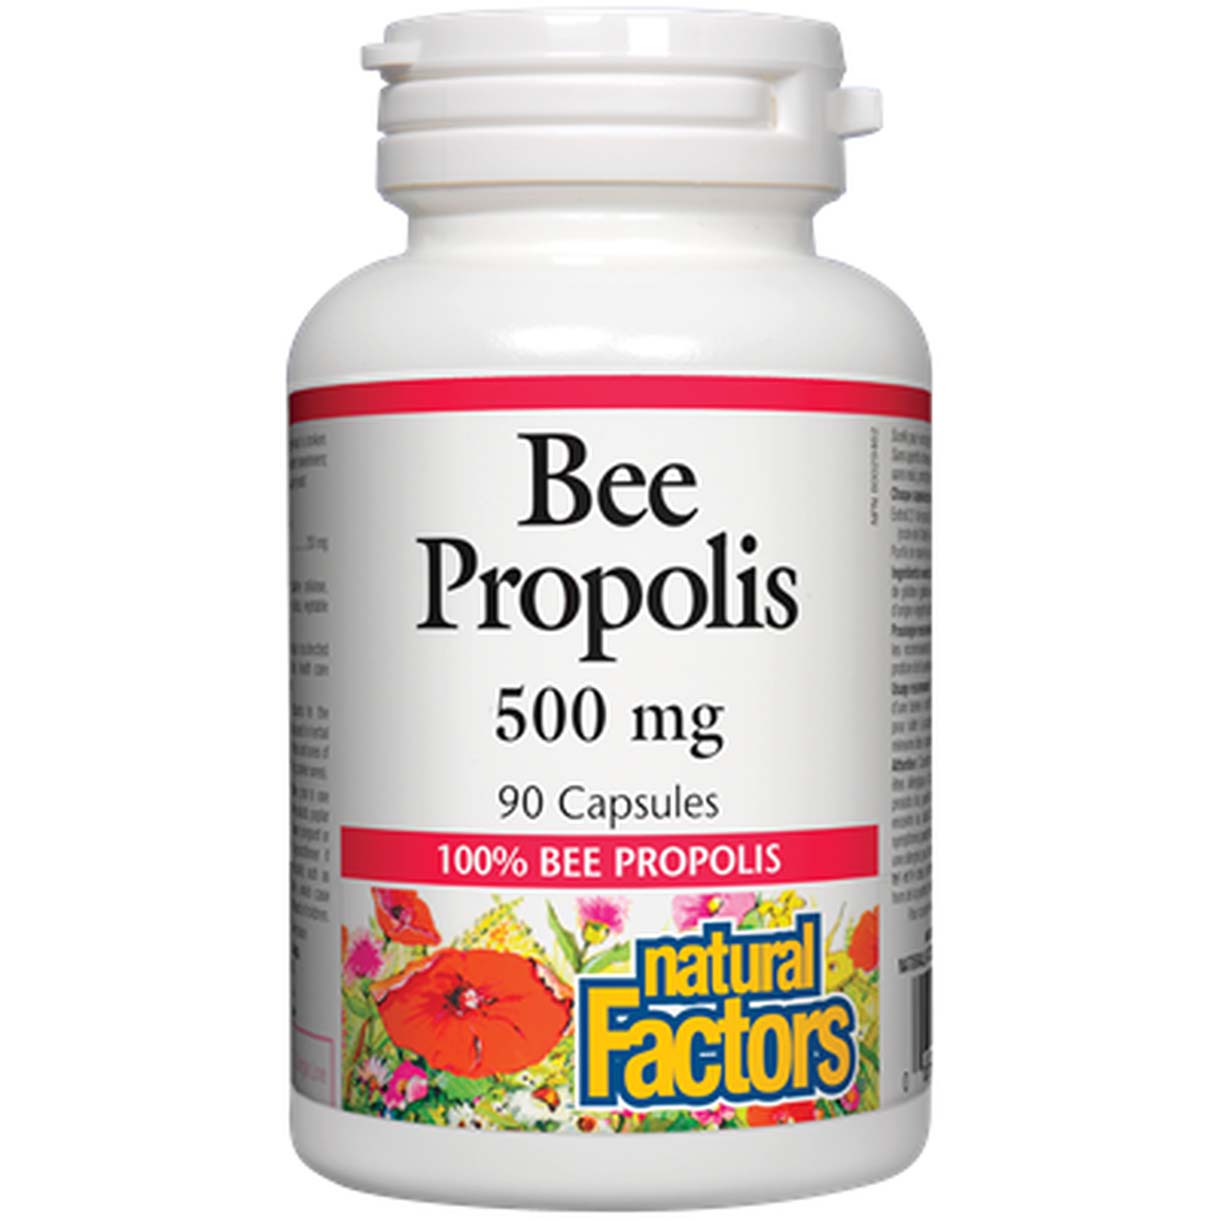 Natural Factors Bee Propolis 90 Capsules 500 mg